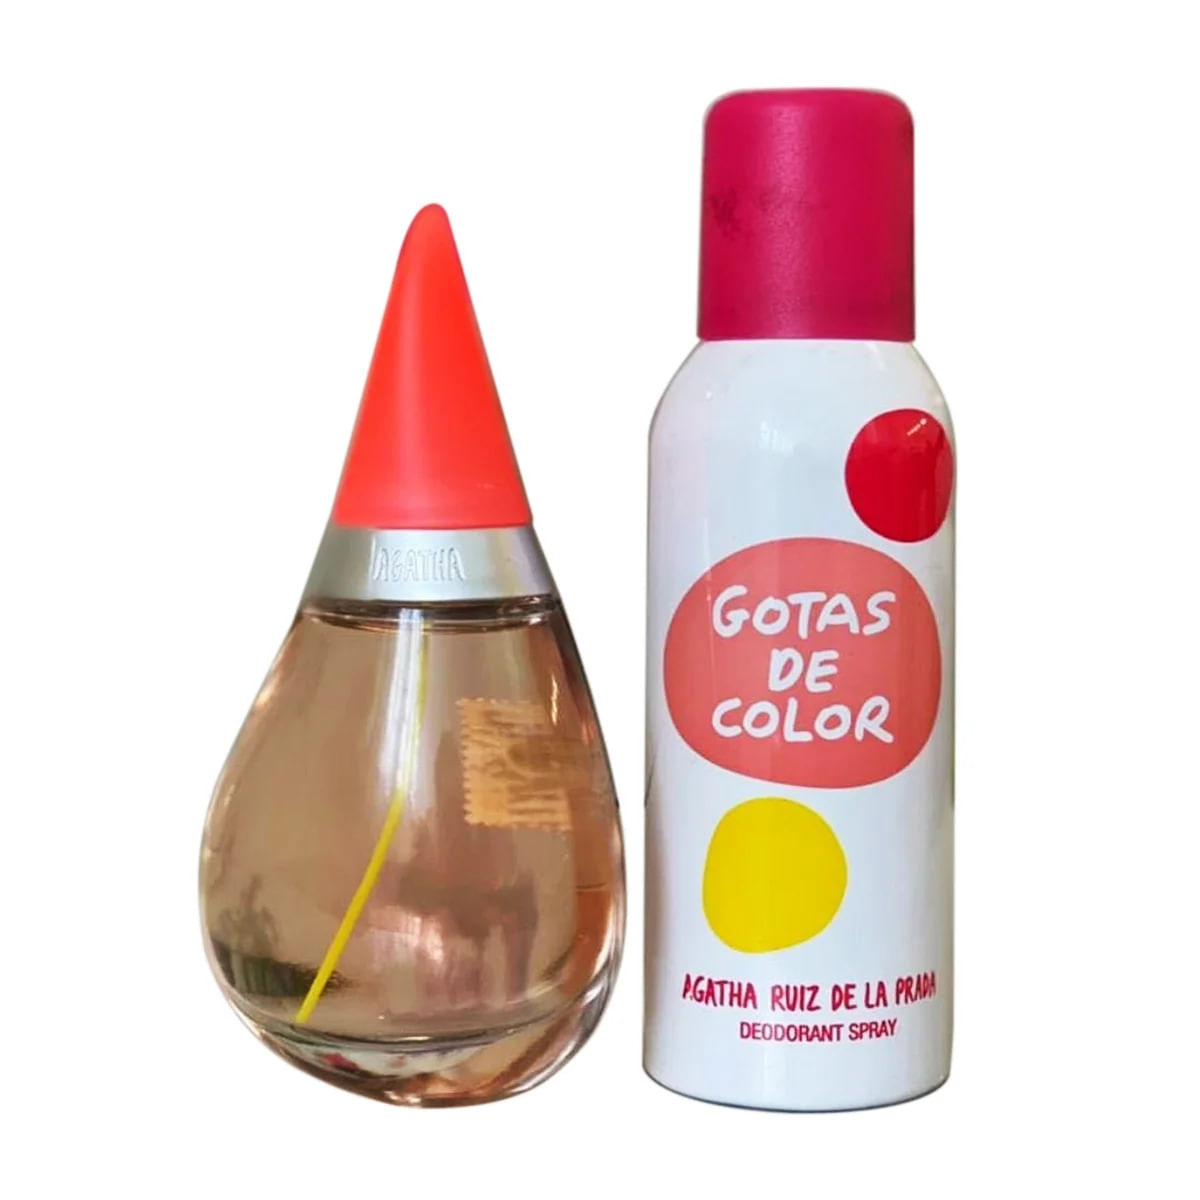 Ágatha Ruiz de La Prada set gotas de color EDT + desodorante